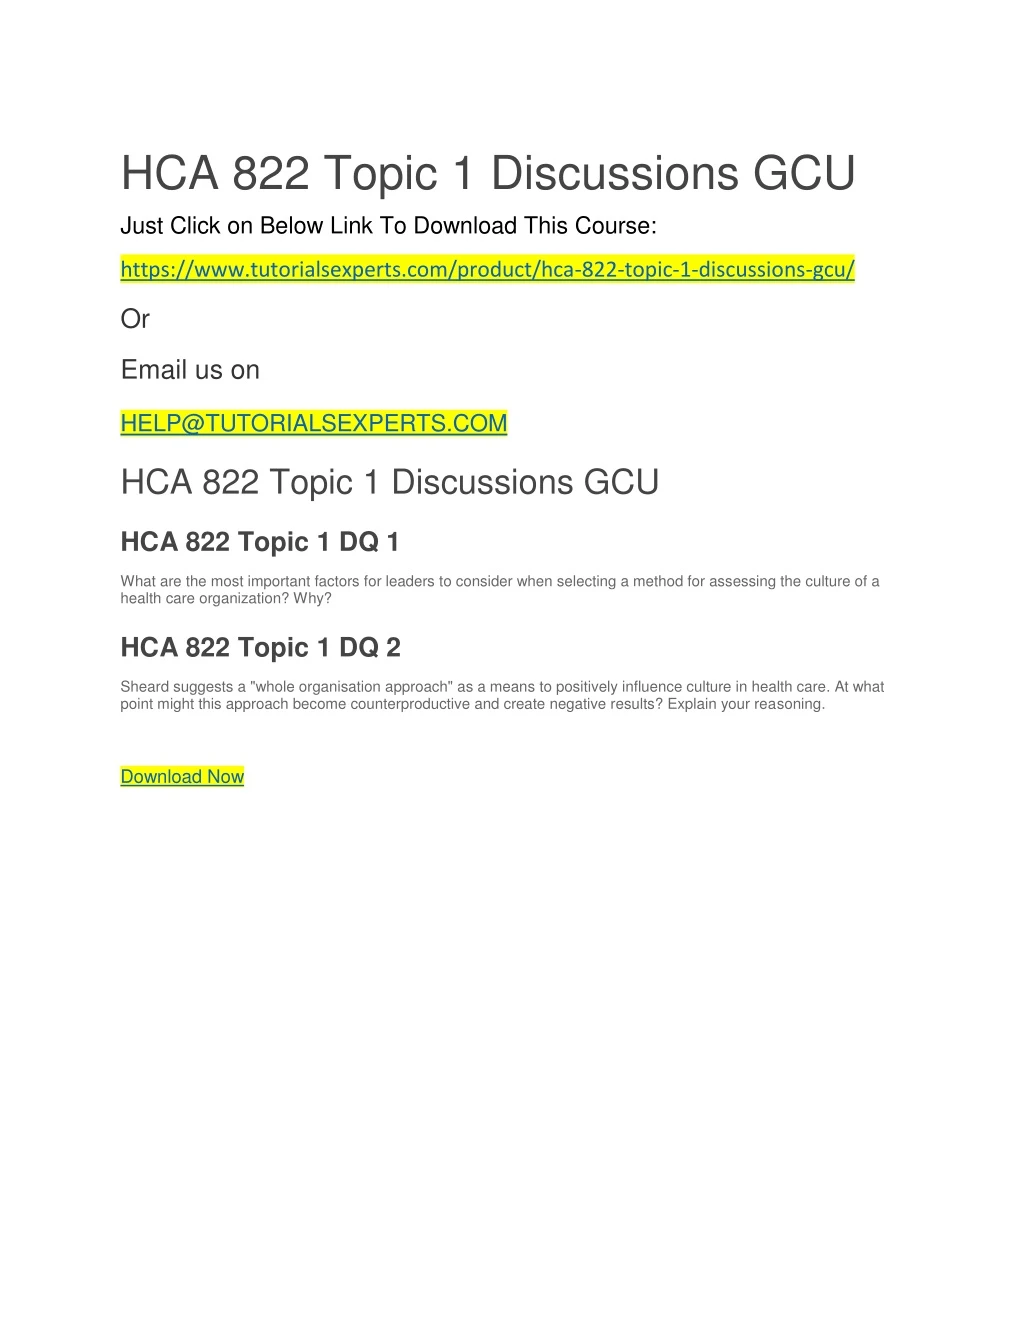 hca 822 topic 1 discussions gcu just click